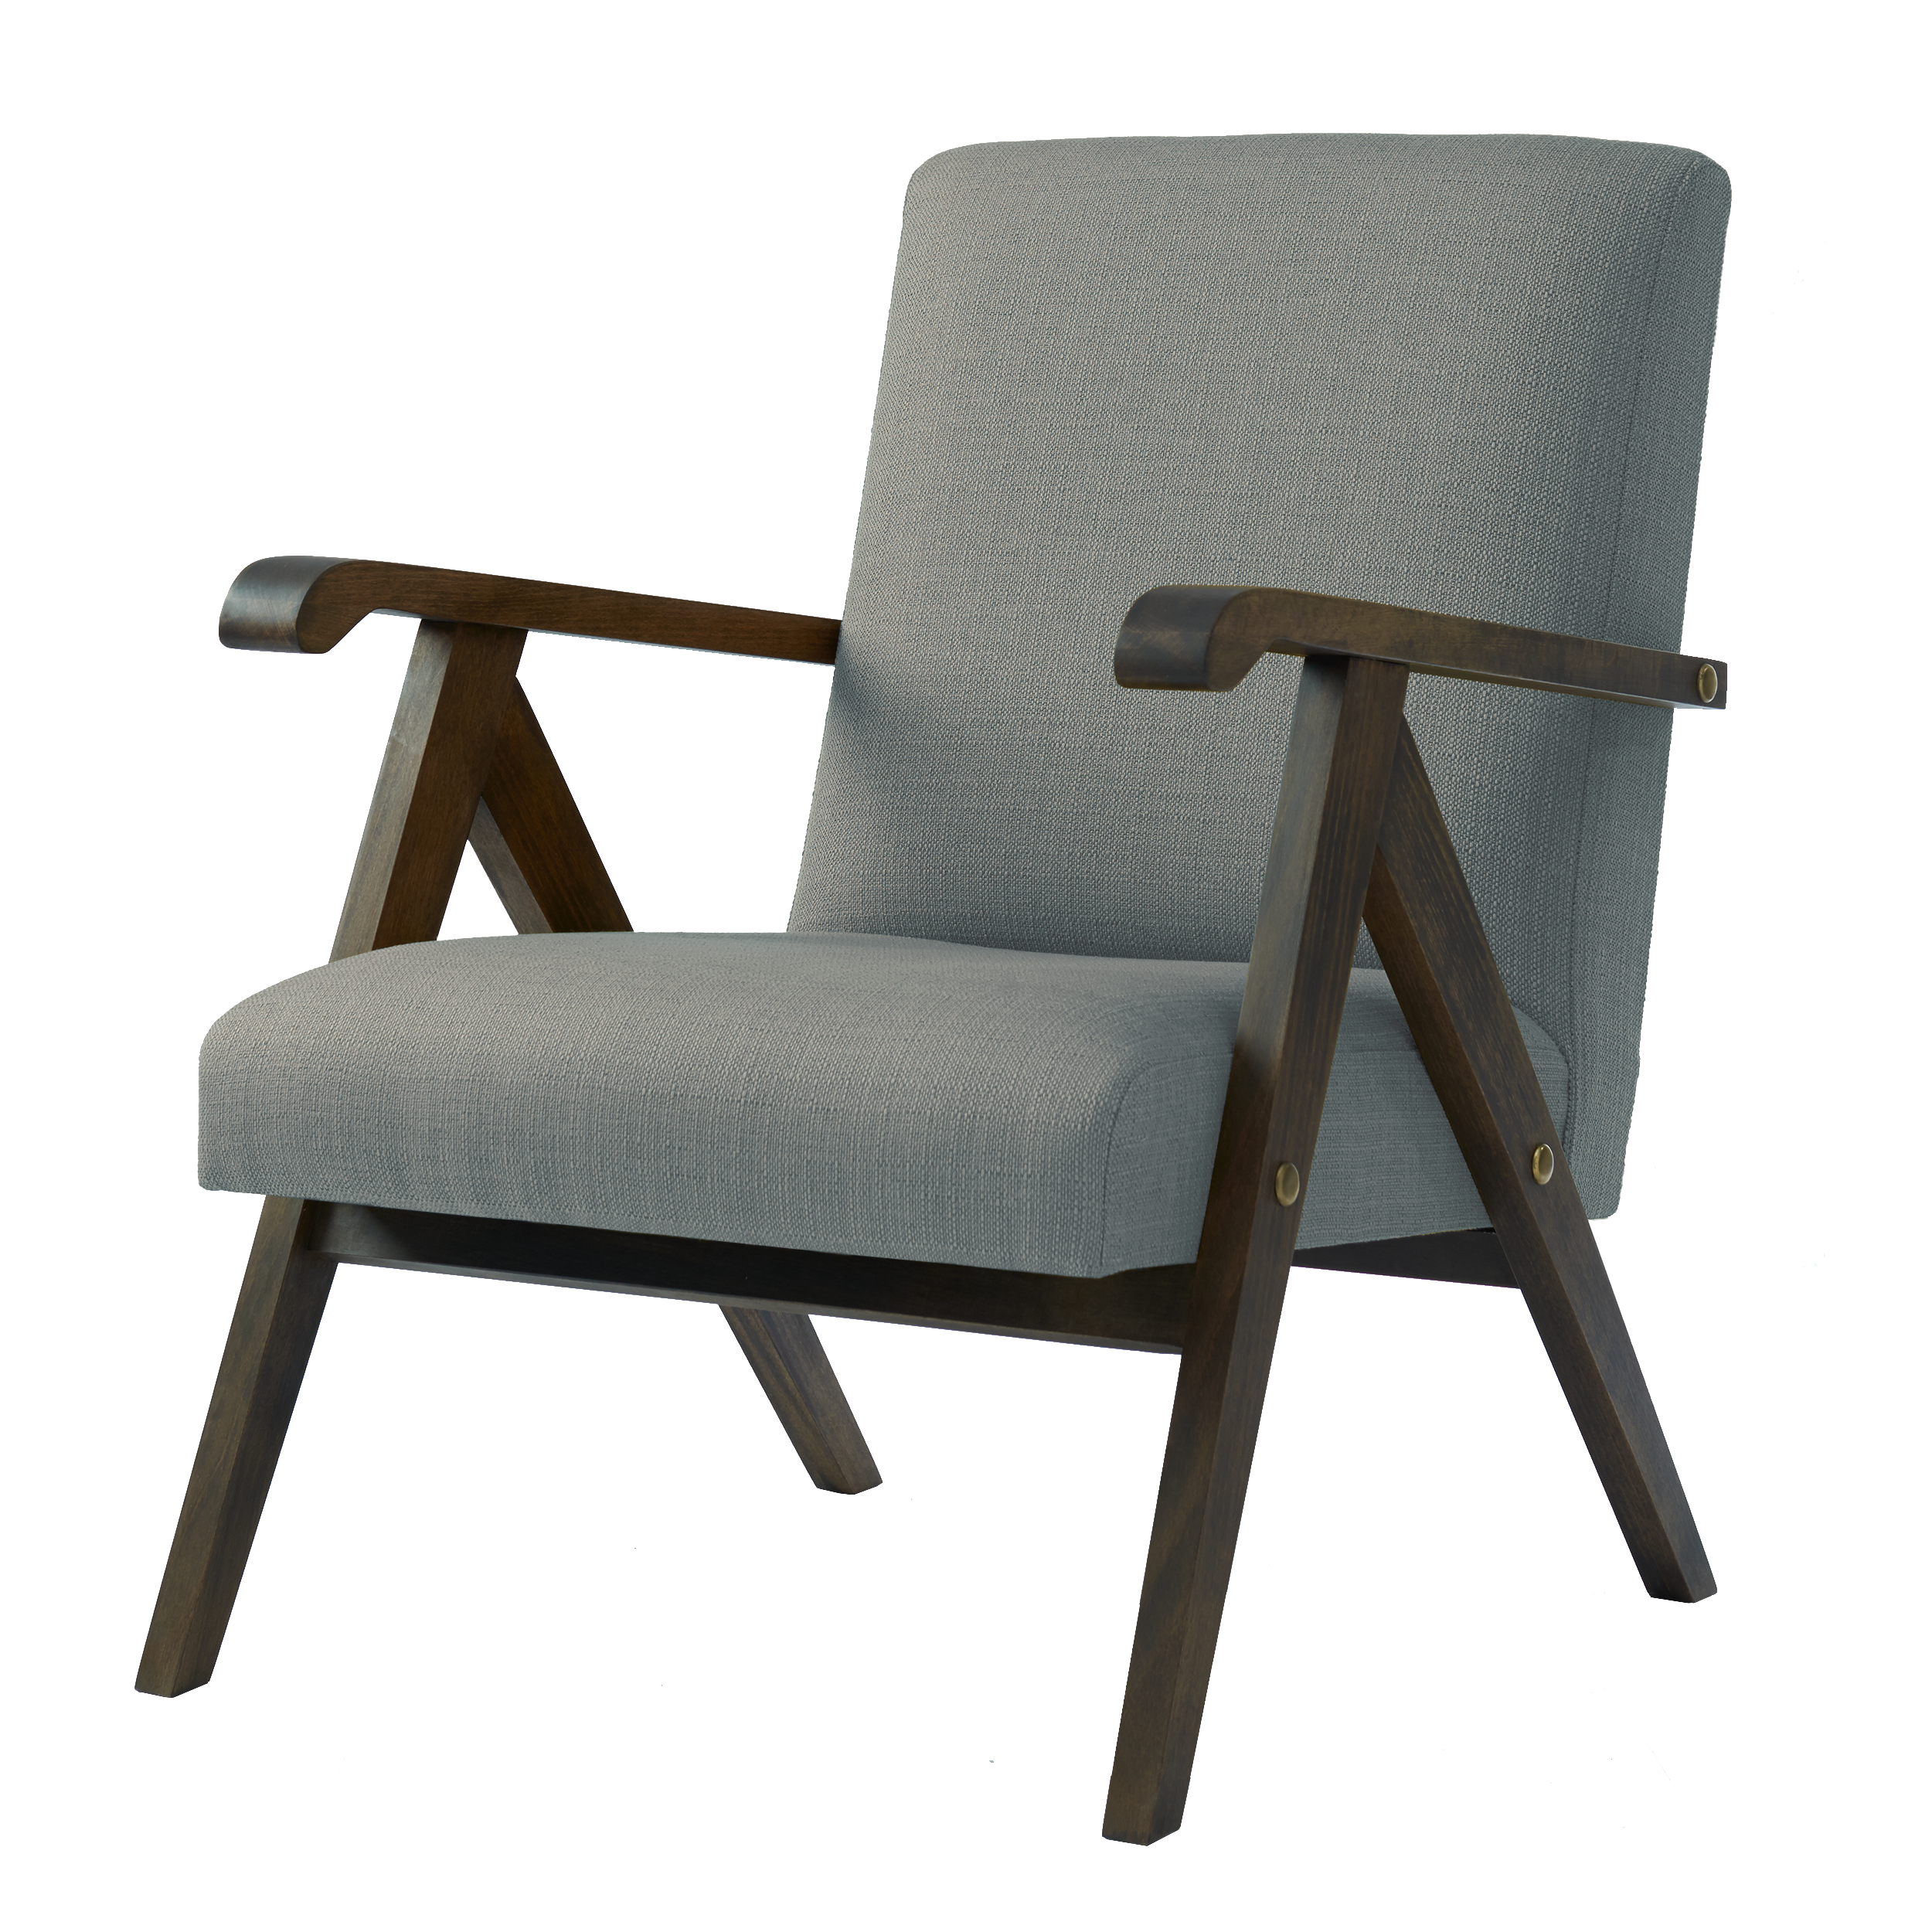 MONKLET Chair upholstery colour light grey, dark beech frame